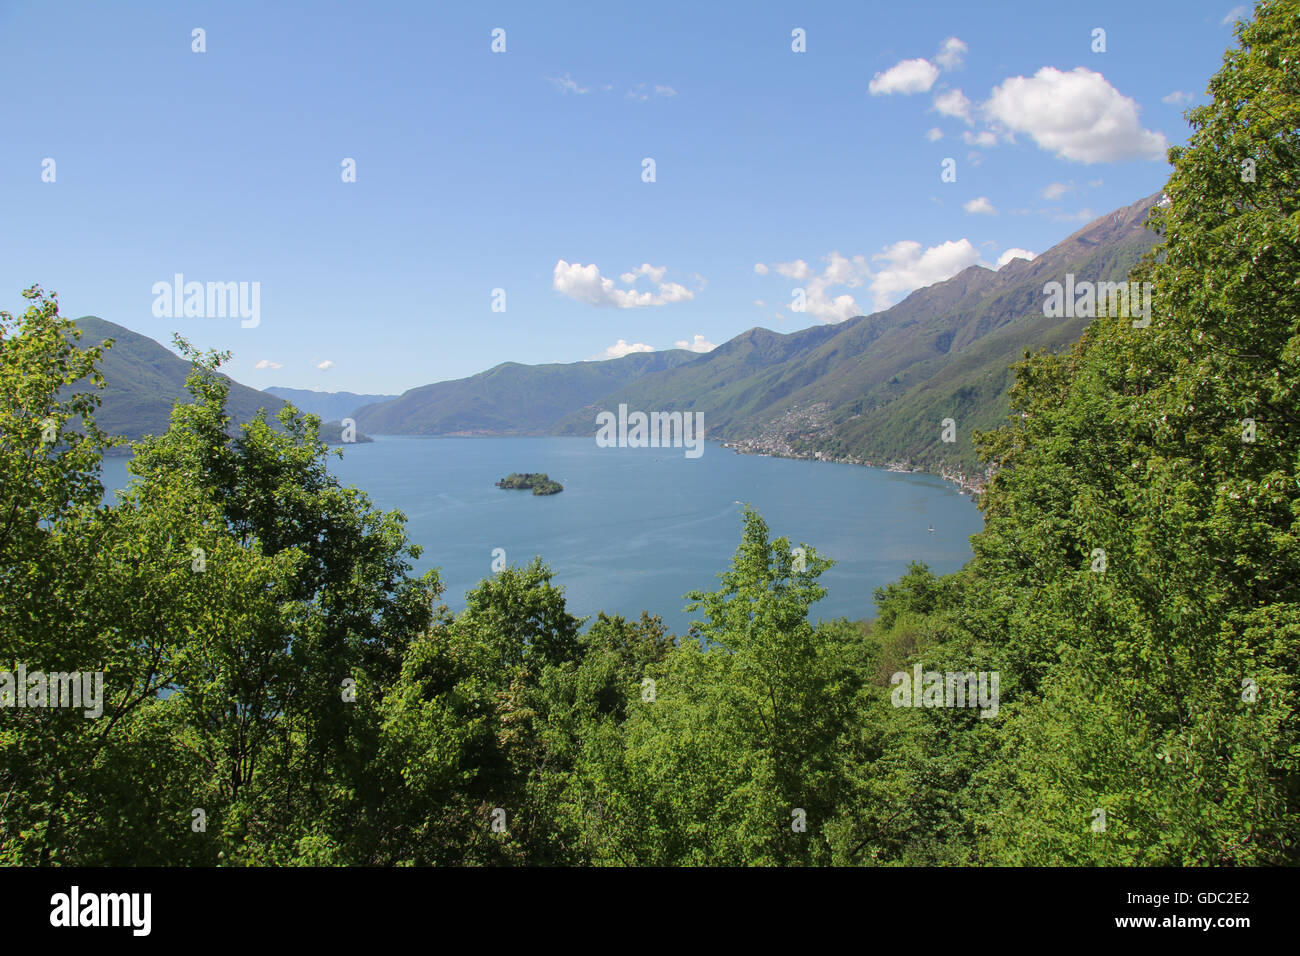 Switzerland,Europe,Ticino,Sopra Ronco,wood,forest,Lago Maggiore,view,Brissago,islands, Stock Photo